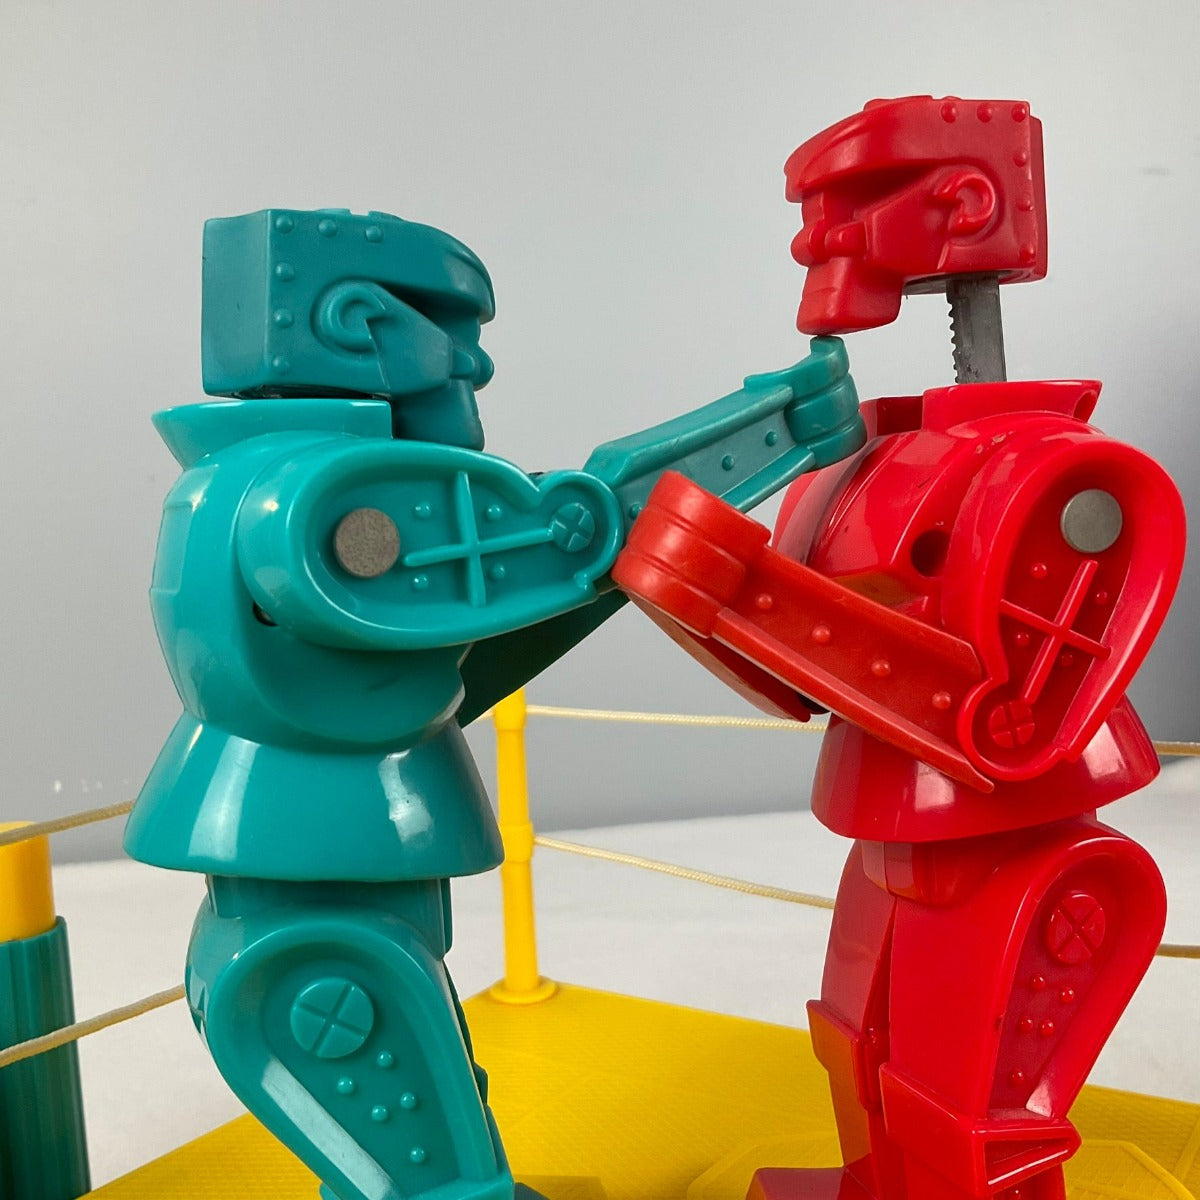 Vintage Rock'em Sock'em Robots game by Mattel - 2001 Version - Collectible Item